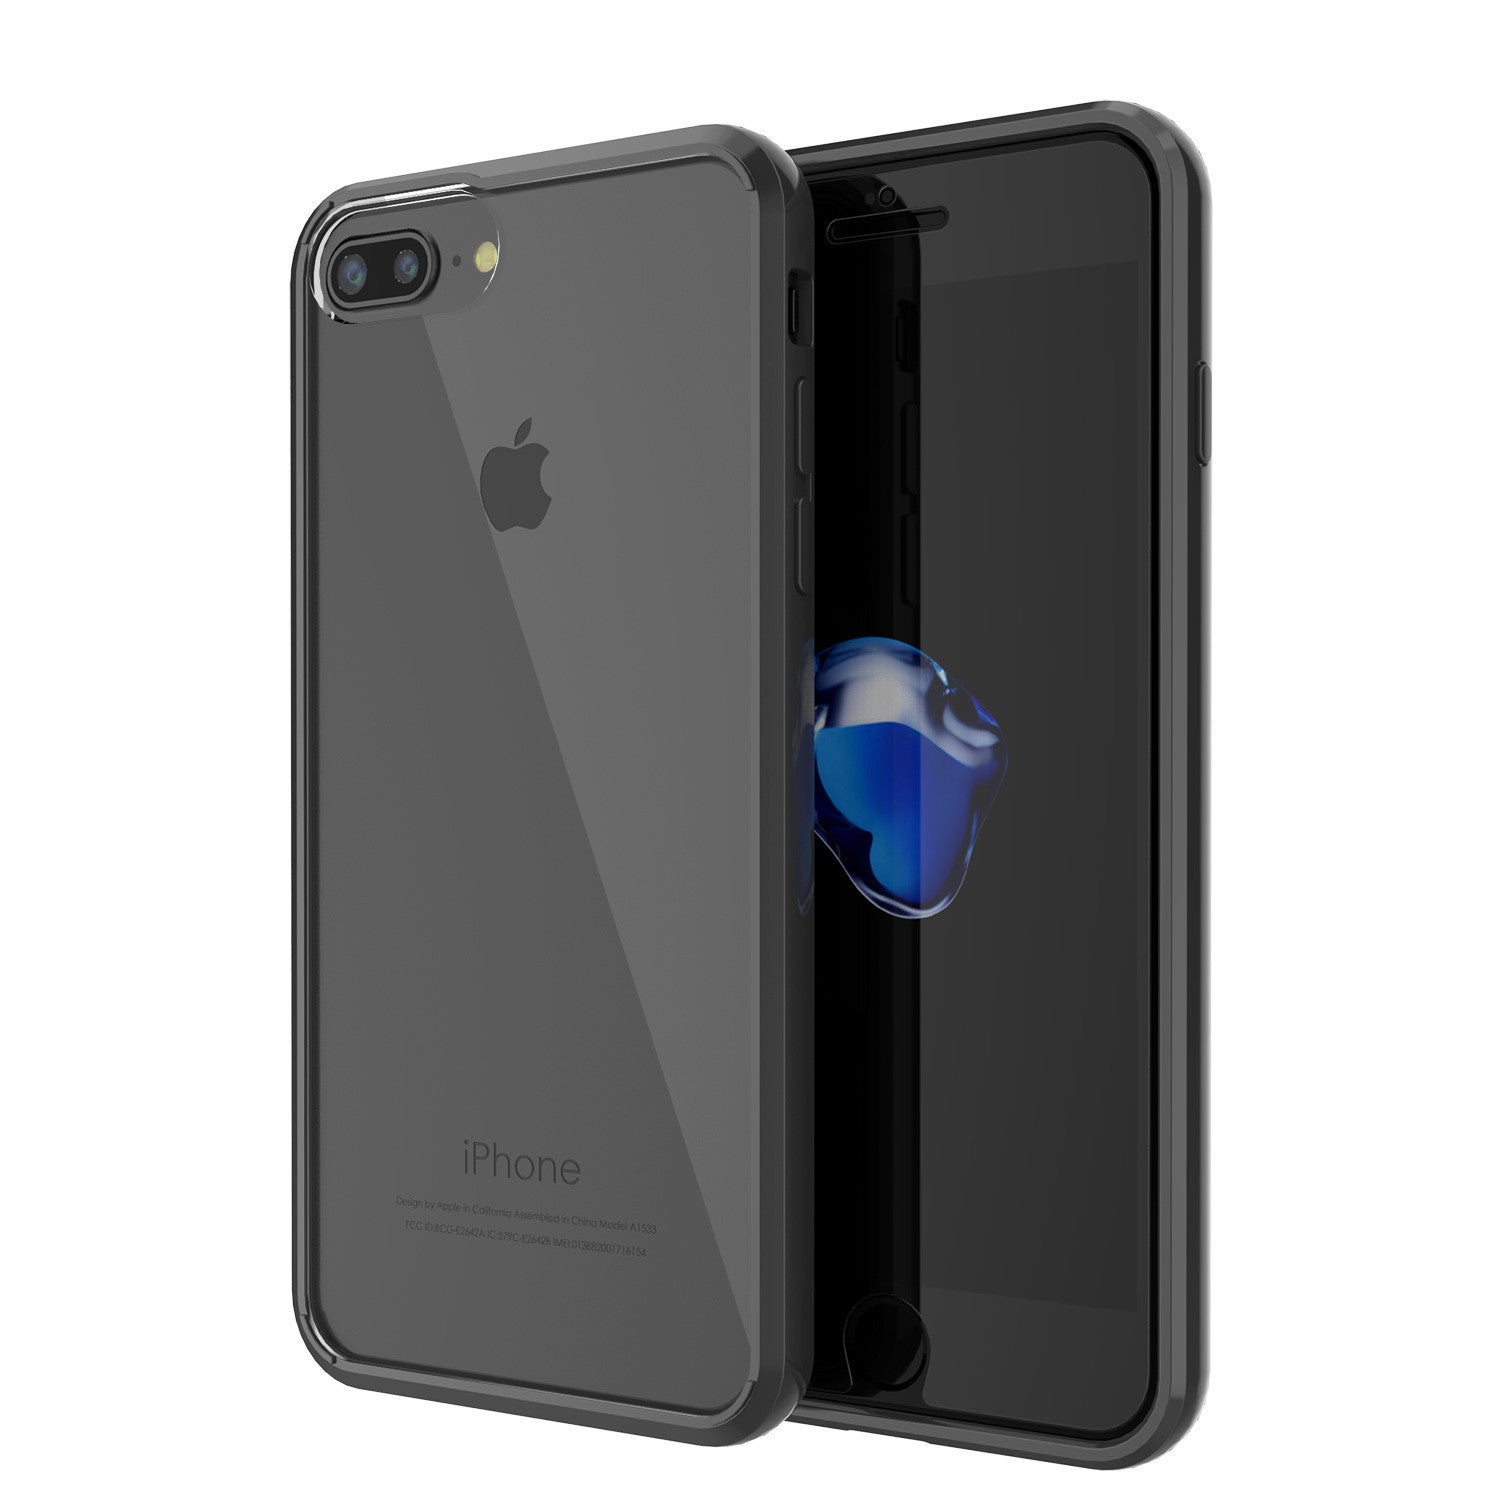 iPhone 7+ Plus Case PunkCase LUCID Black Series for Apple iPhone 7+ Plus